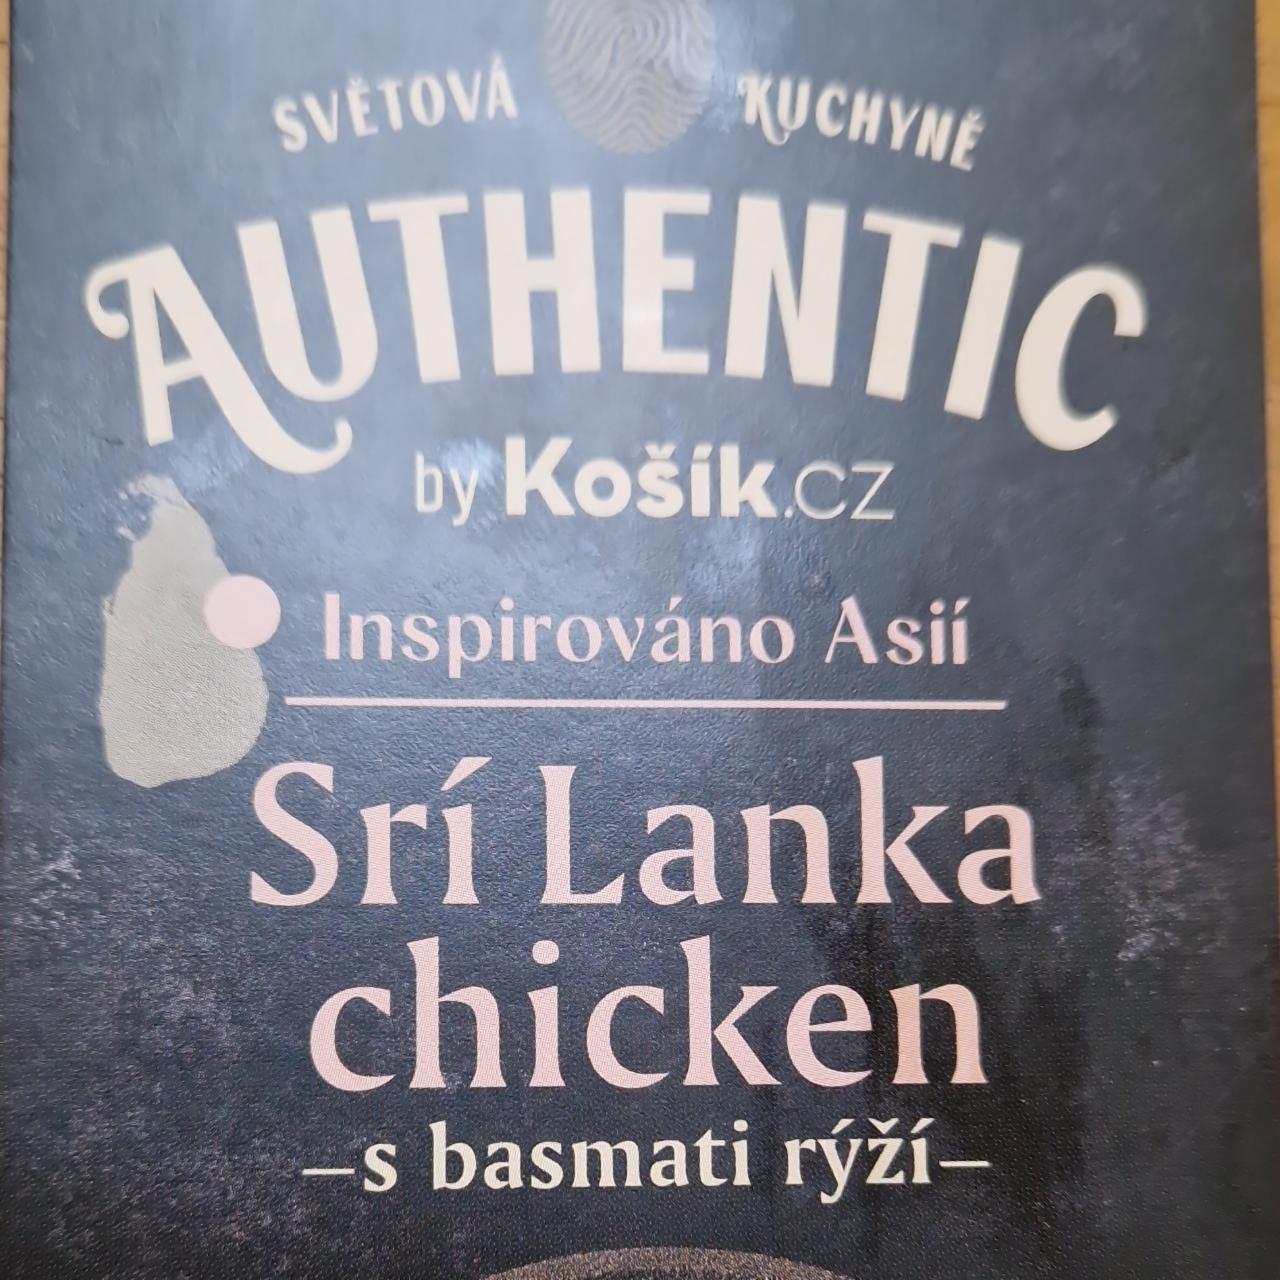 Fotografie - Srí Lanka chicken s basmati rýží Authentic by Košík.cz